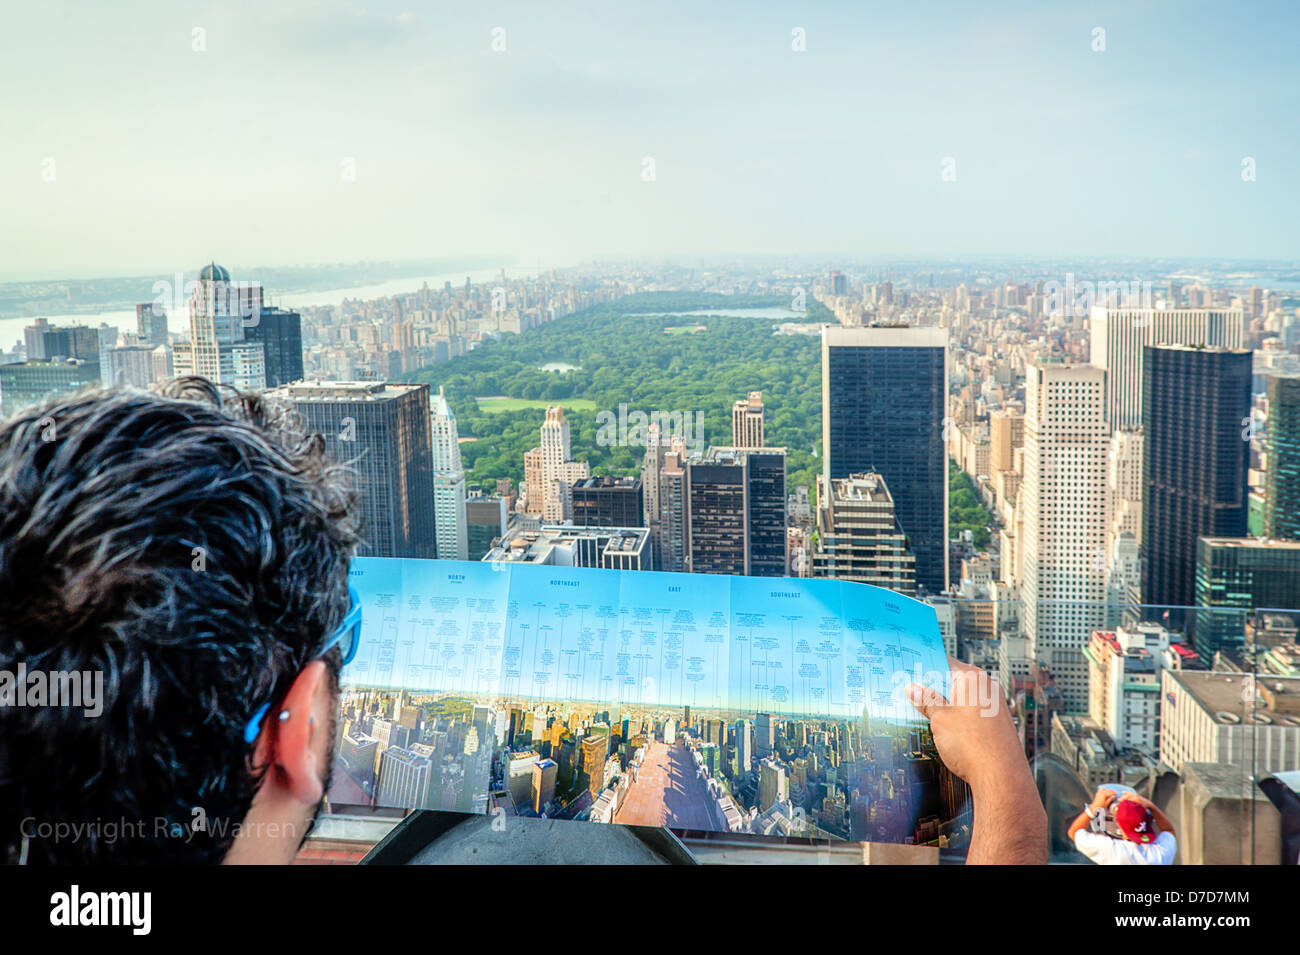 Ein Tourist vergleicht seine Karte mit dem spektakulären Blick auf den Central Park in New York City vom Top of the Rock, Rockefeller Centre Observation Deck. Stockfoto